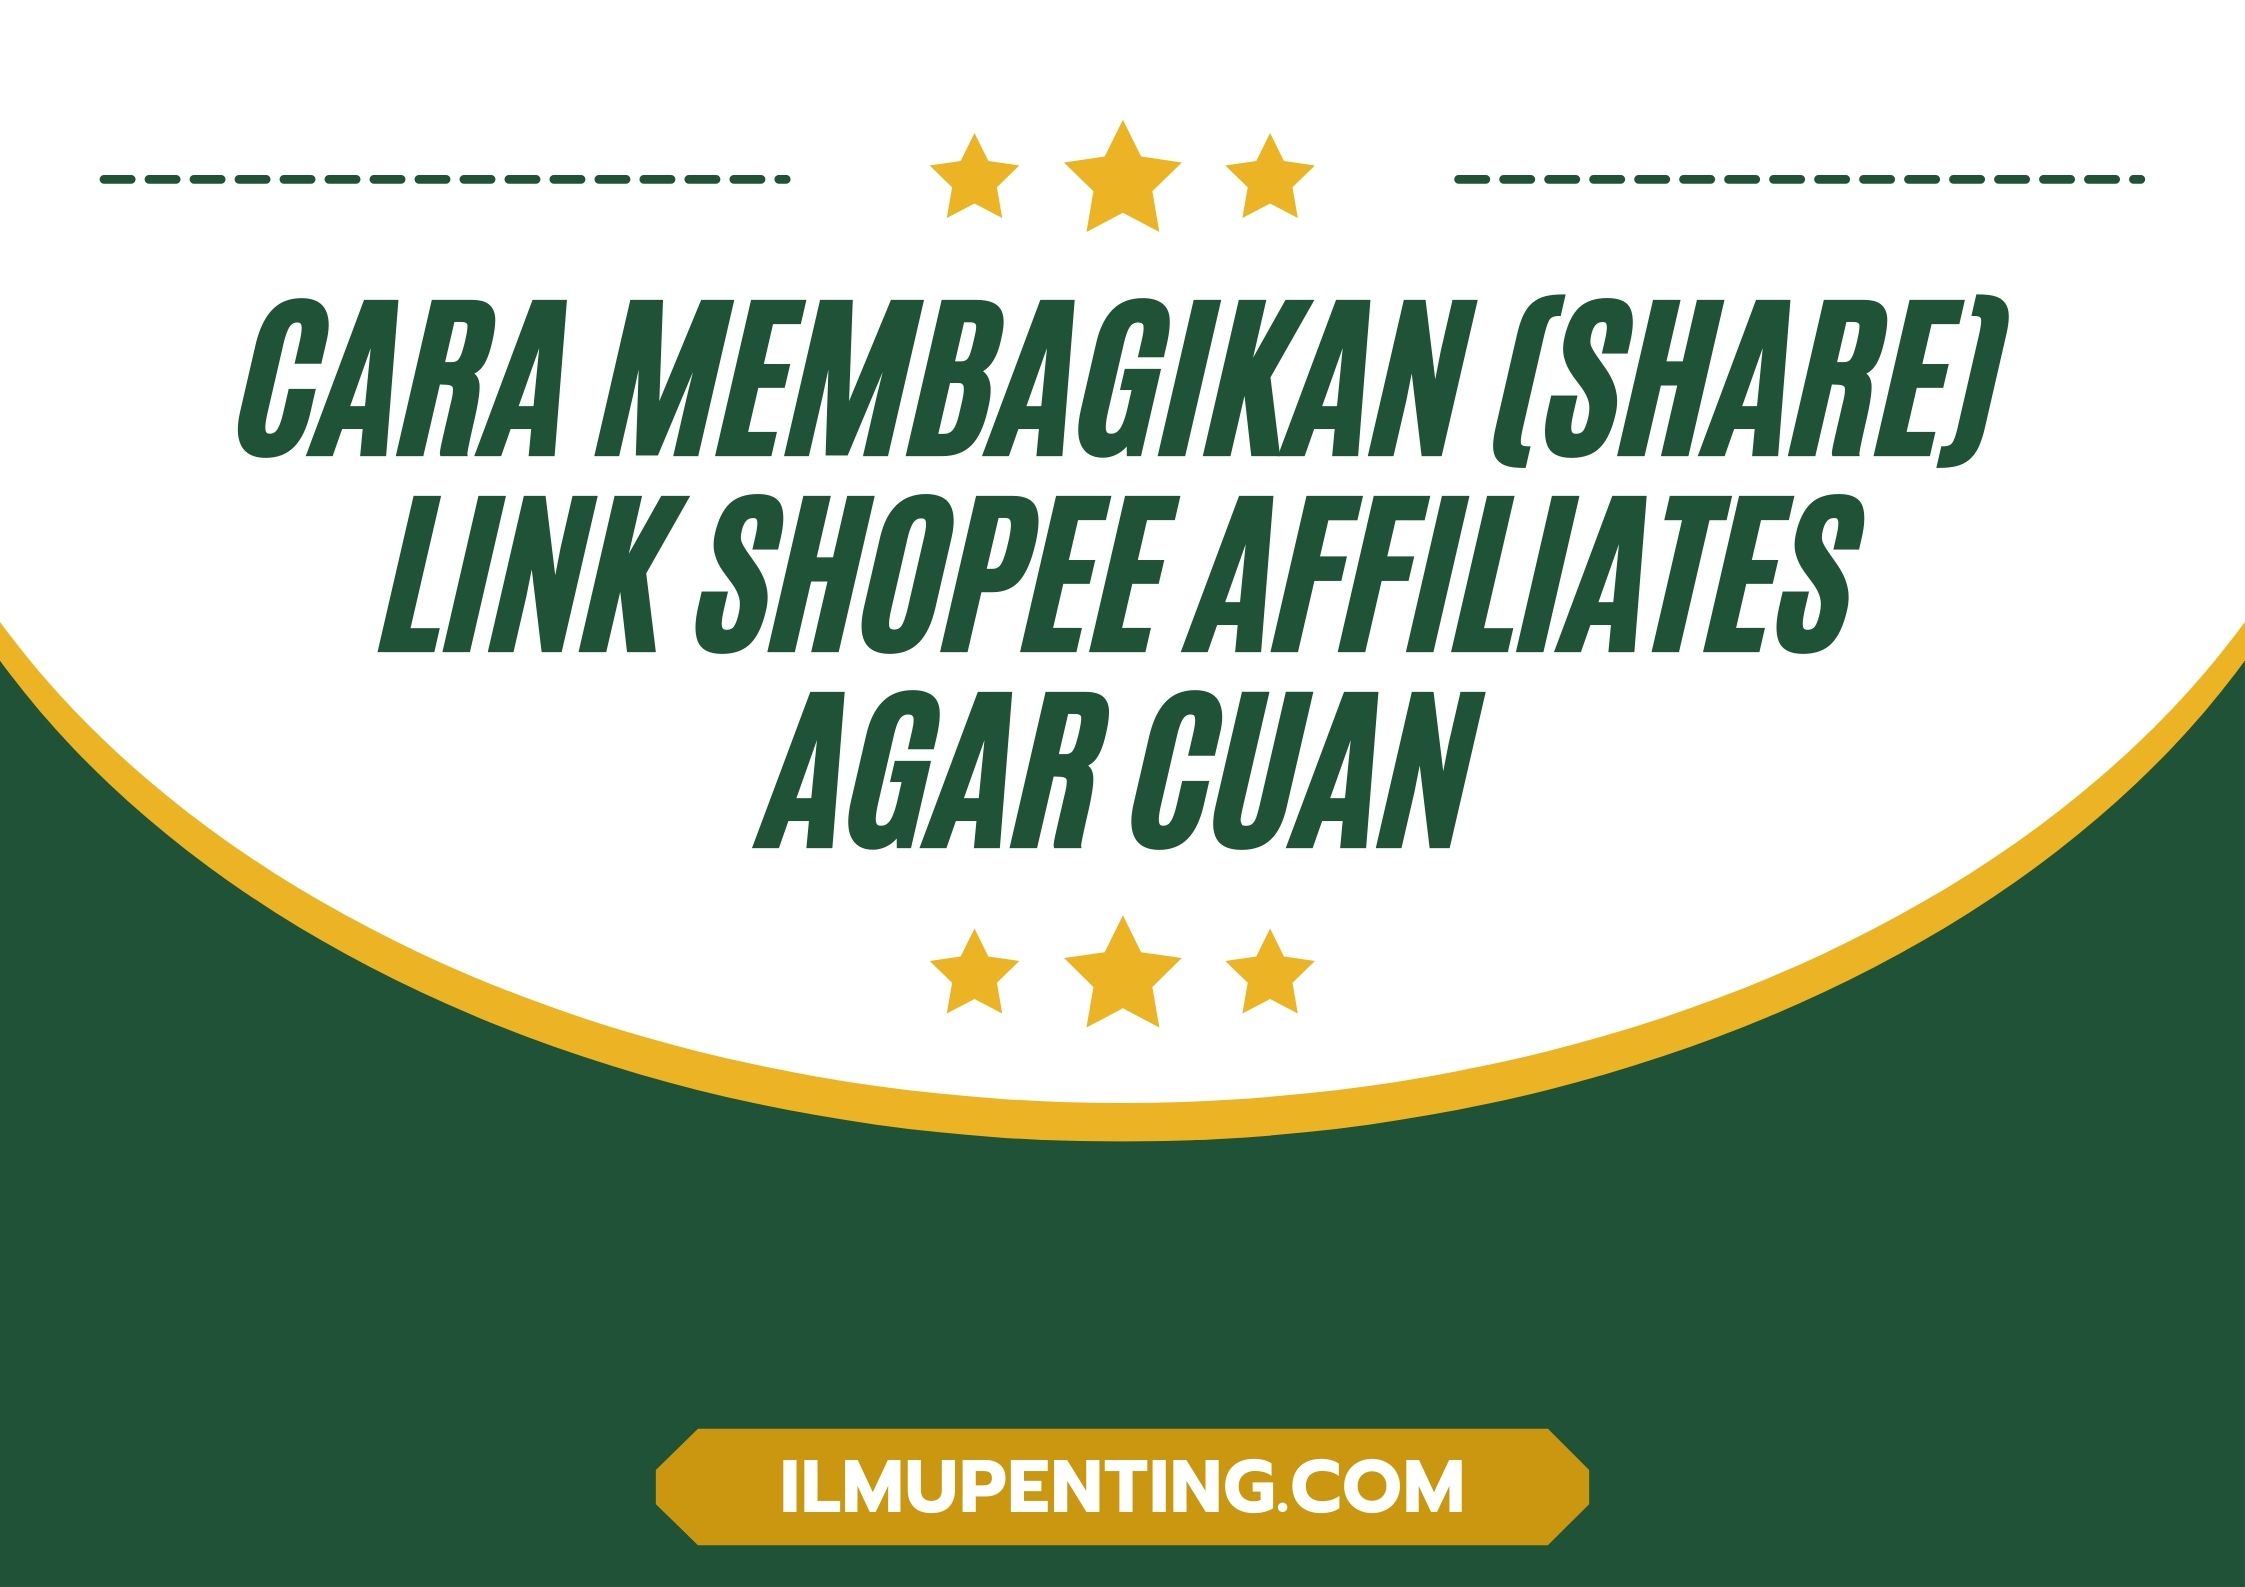 Cara Membagikan (Share) Link Shopee Affiliates Agar Cuan